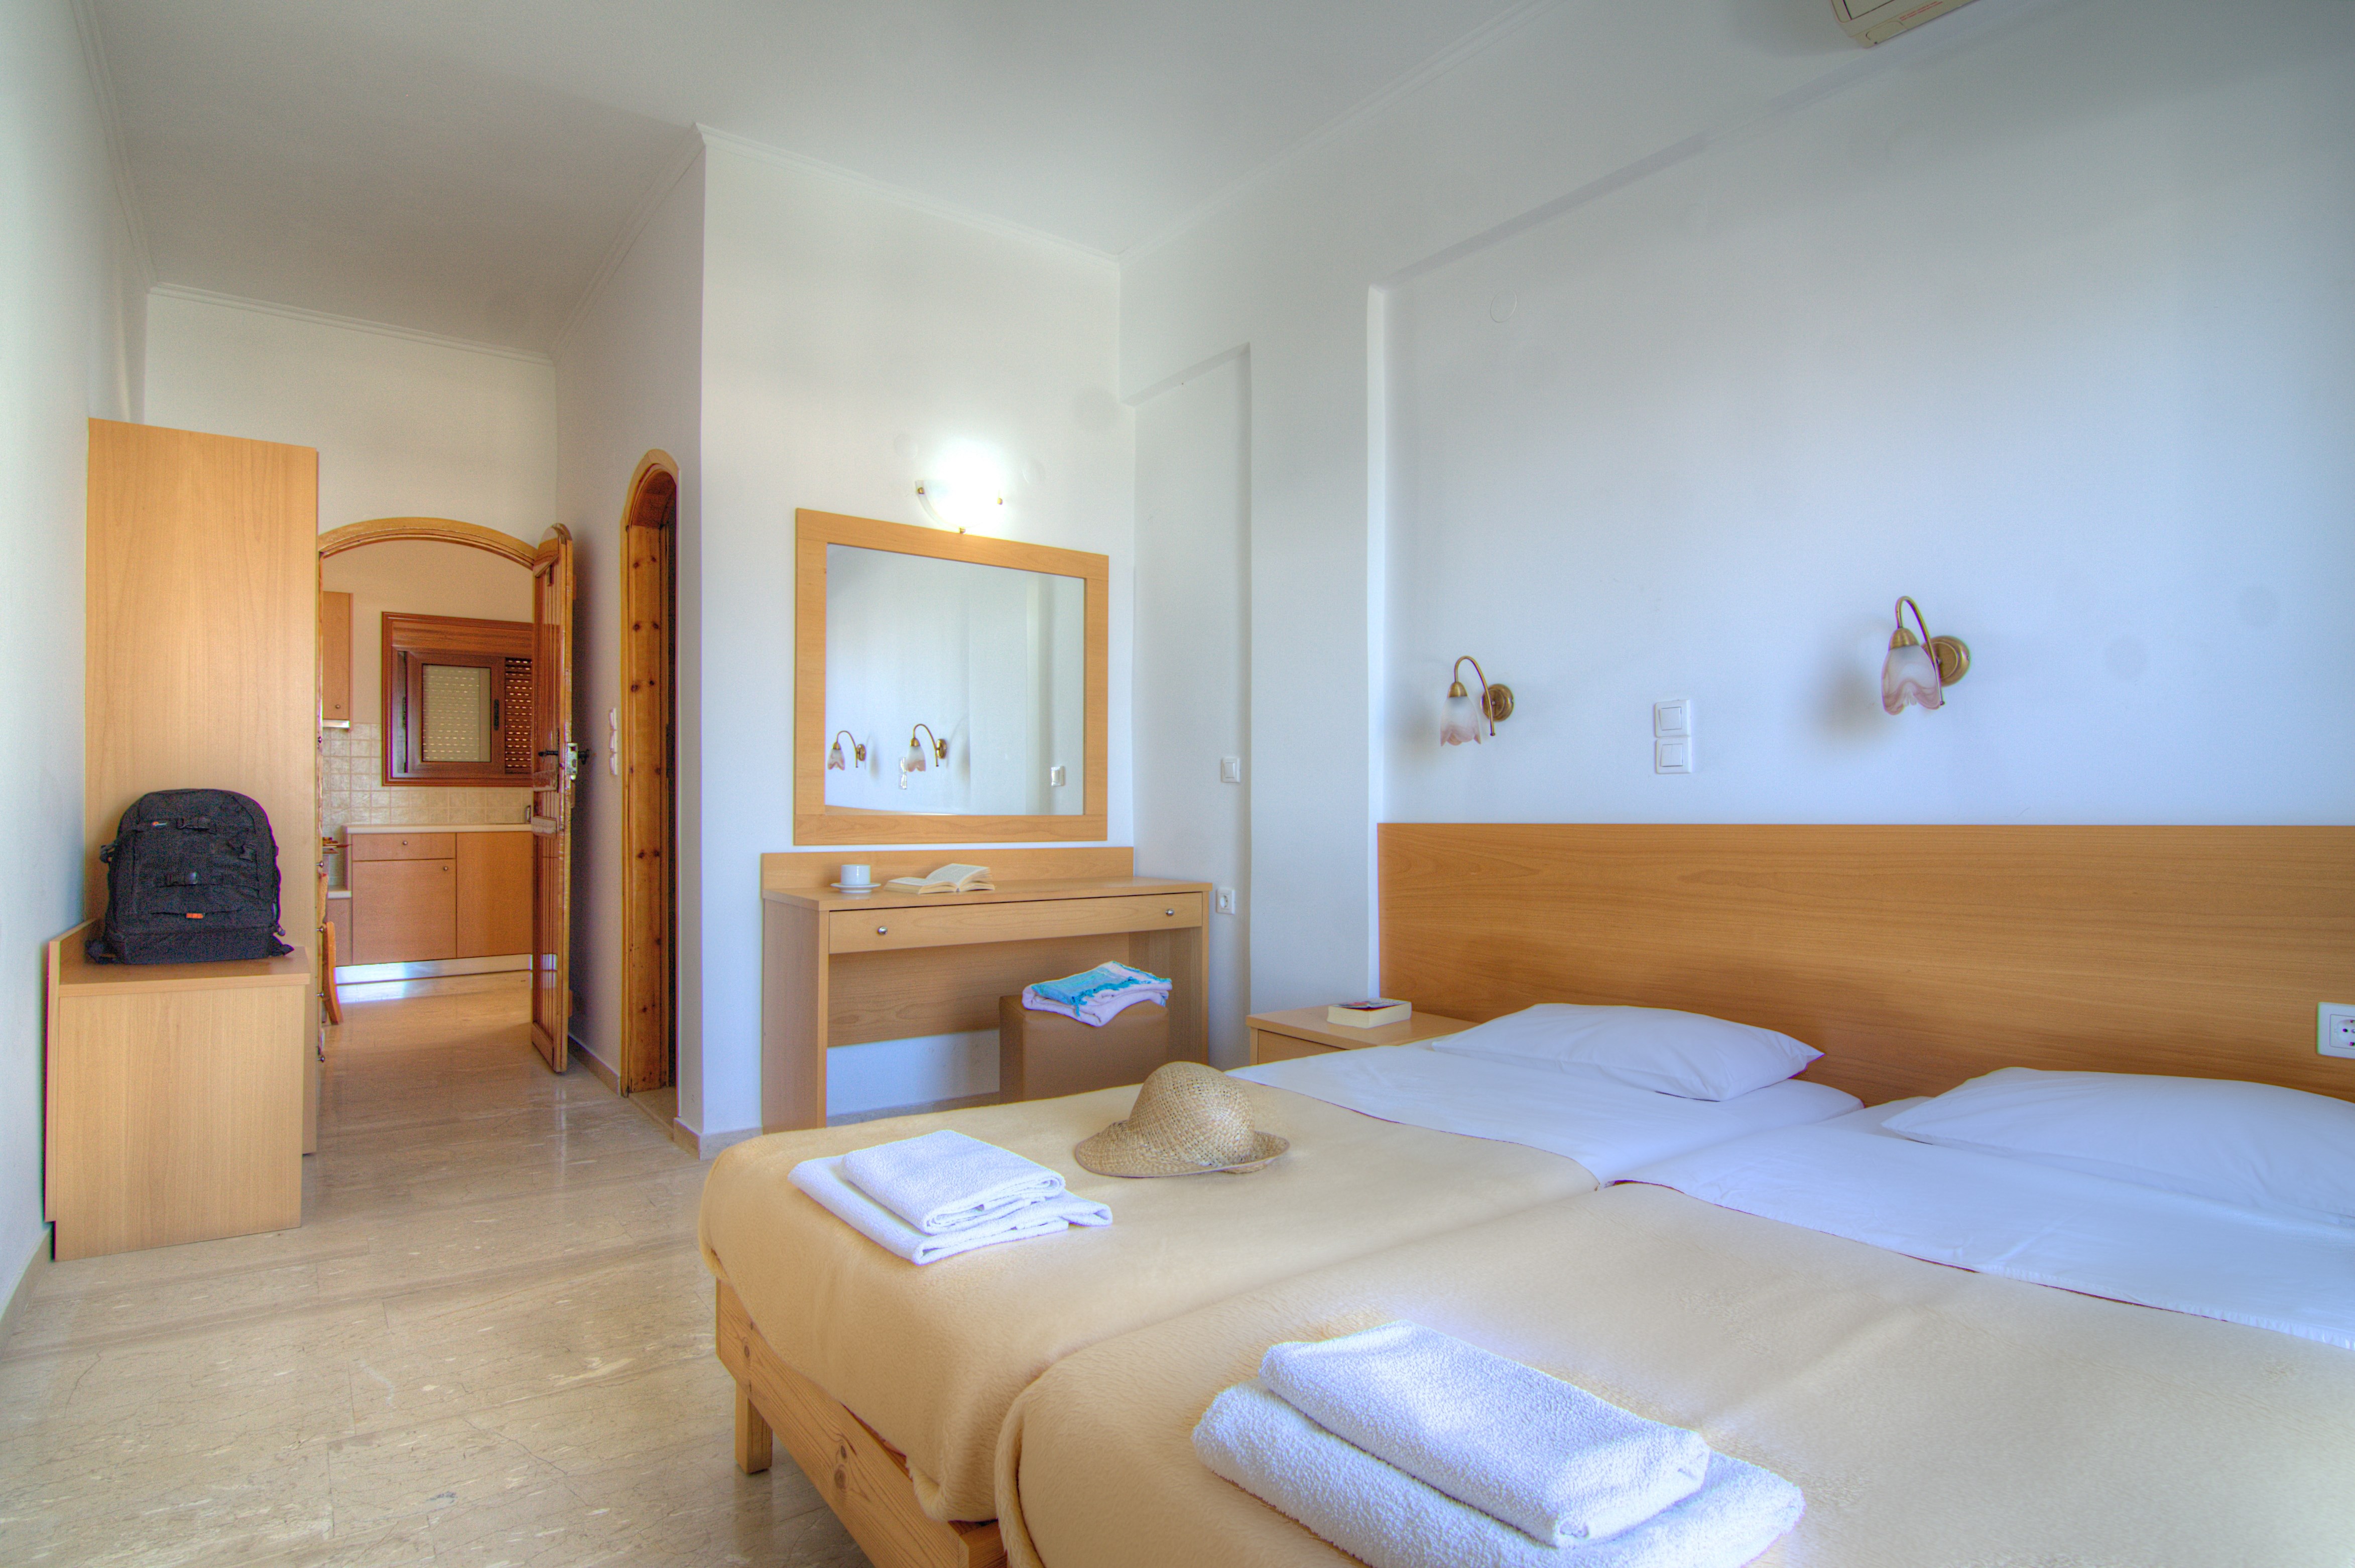 Adonis Hotel 2 Crete 